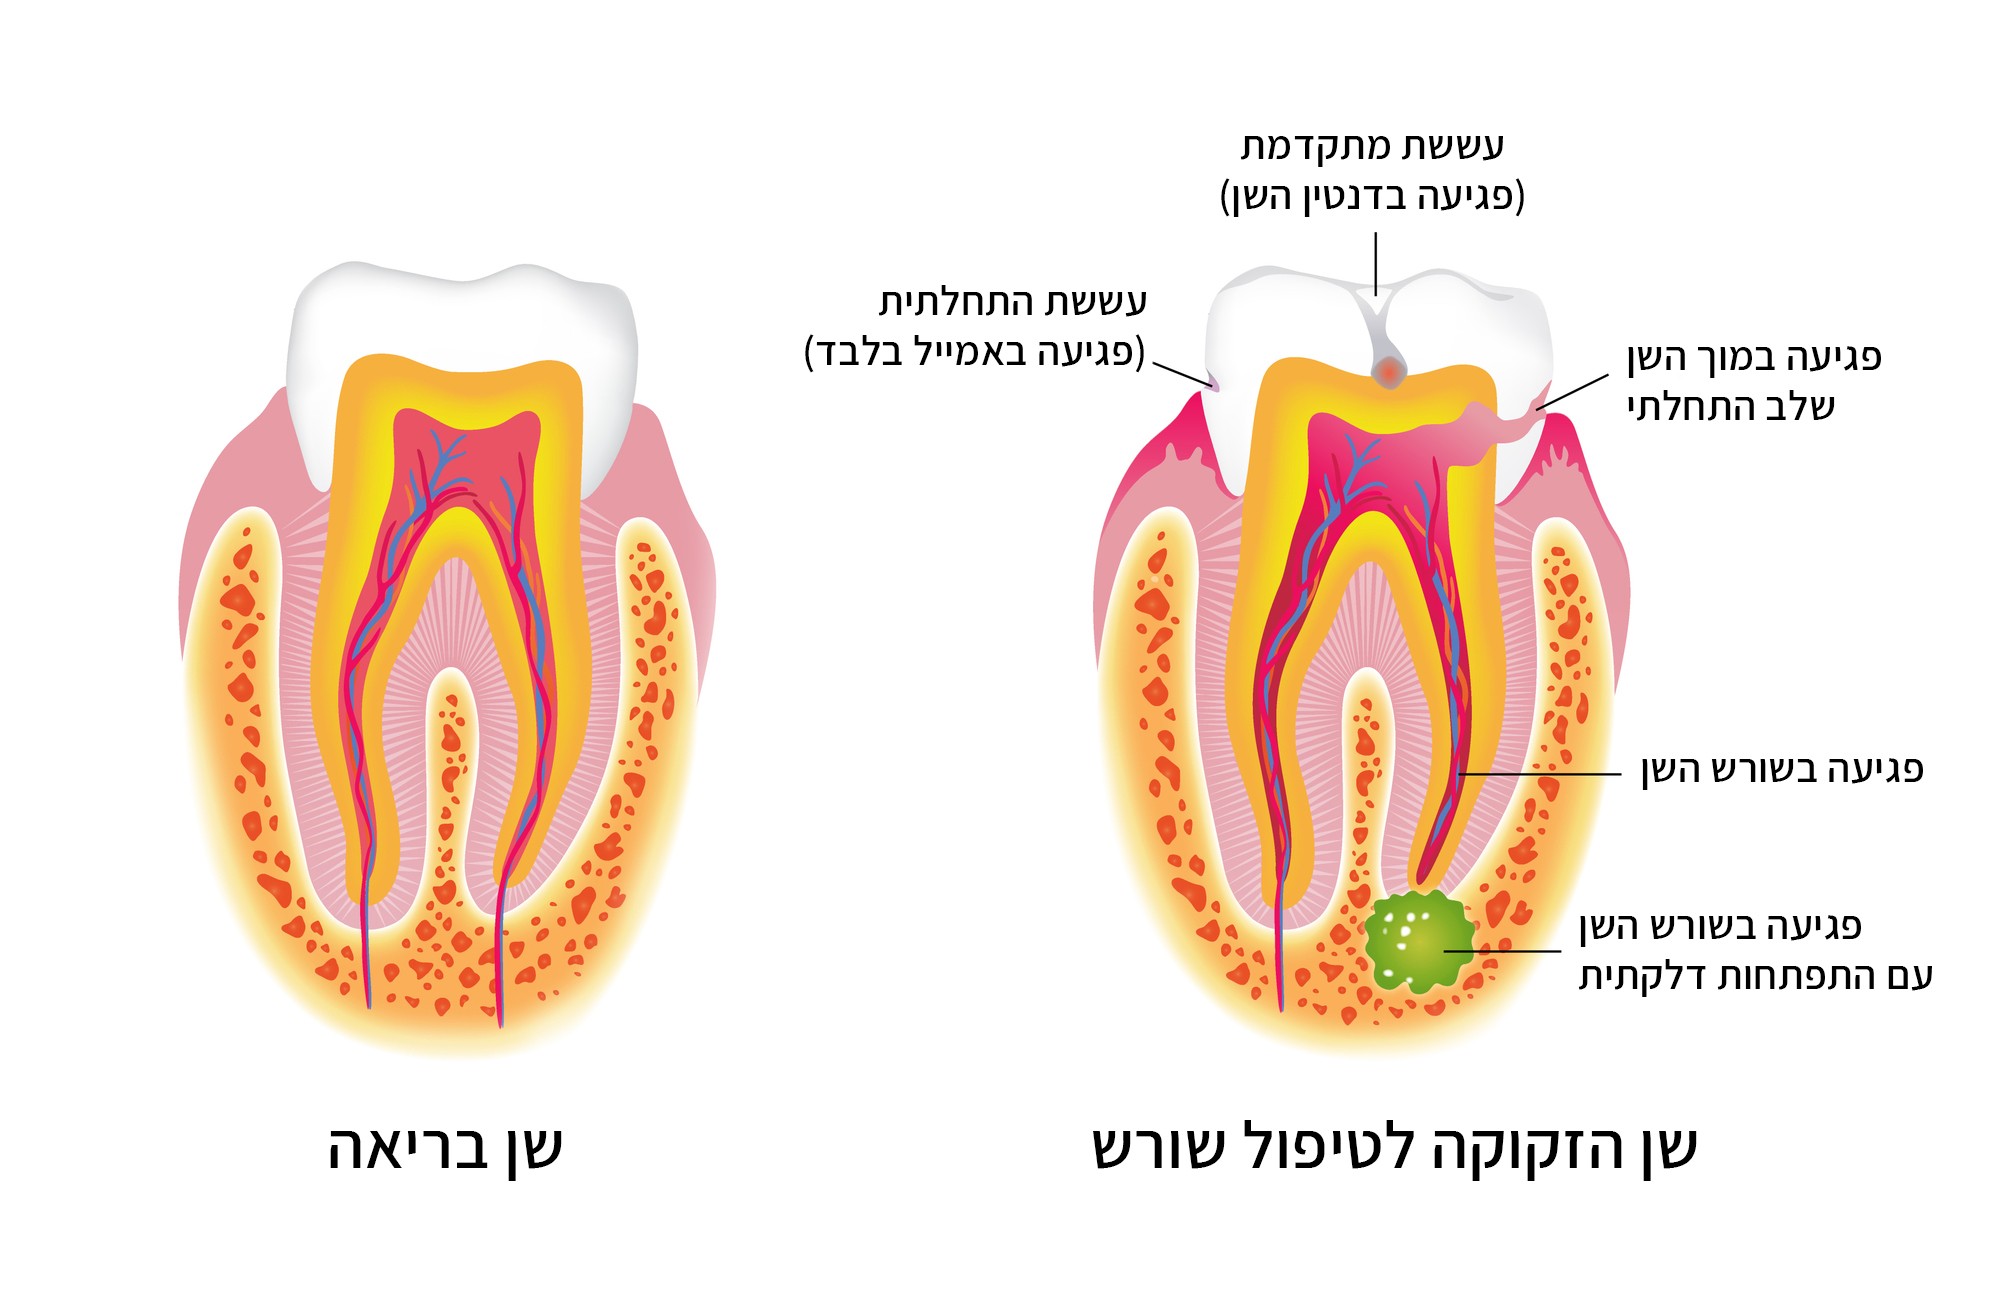 שן הזקוקה לטיפול שורש